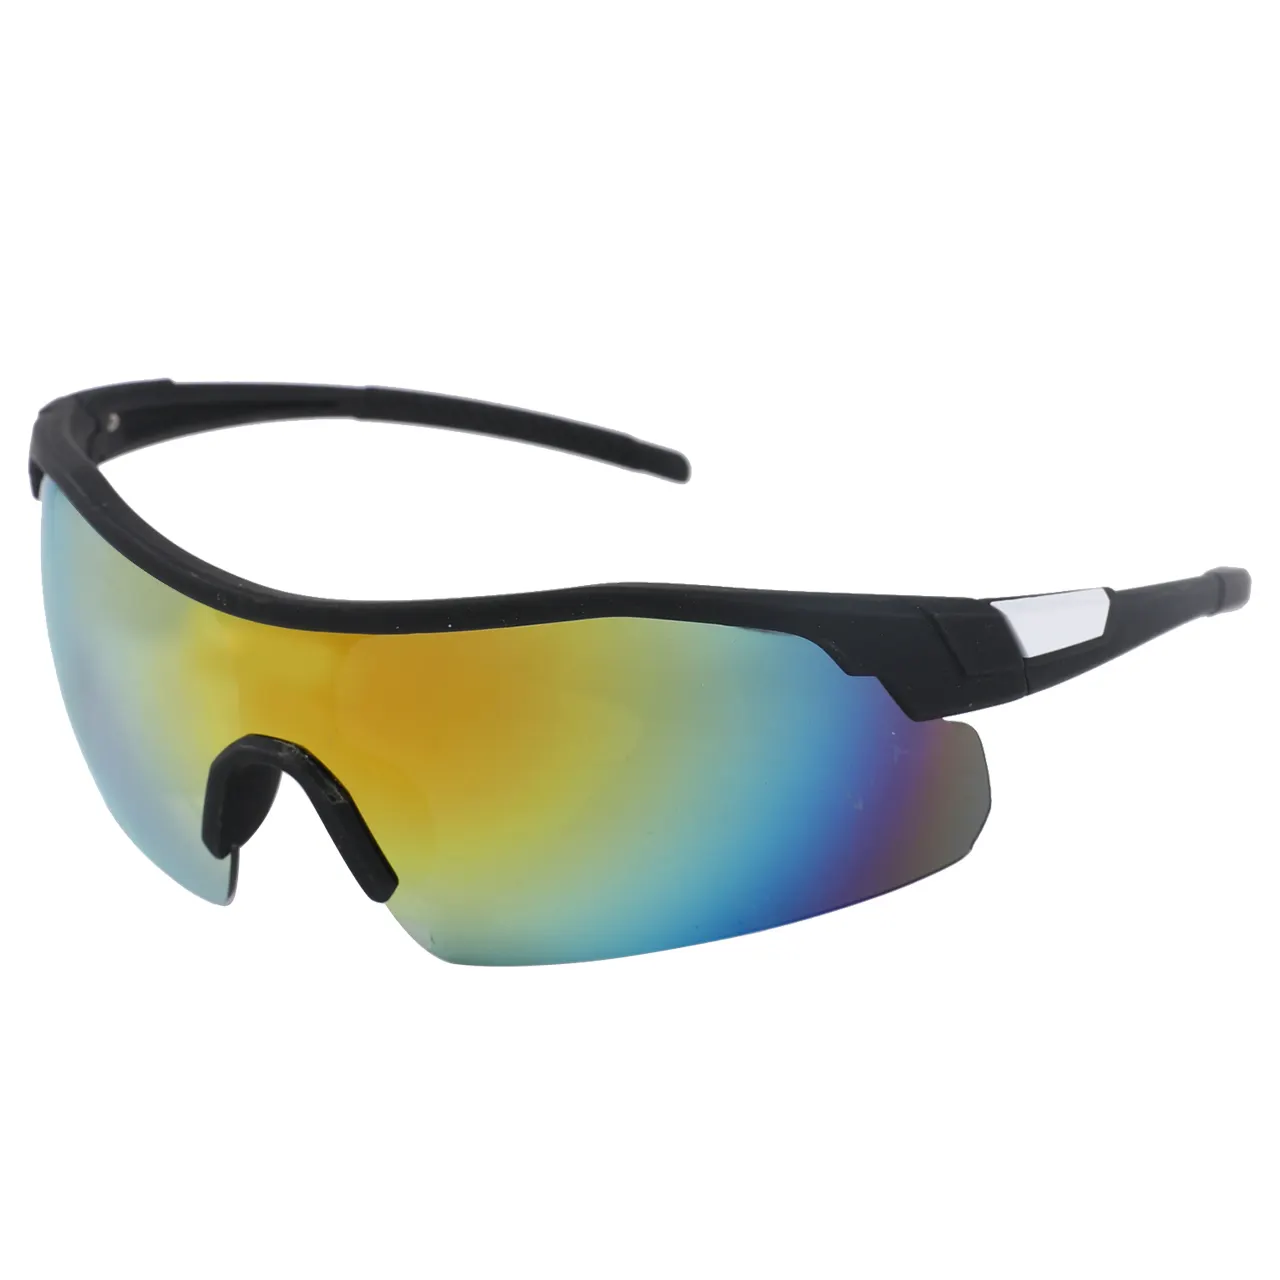 Óculos de sol quadrados para ciclismo, óculos de sol esqui e montanhismo, espelhado e polarizado, grande dimensão, lente anti reflexo, 100% uv pro